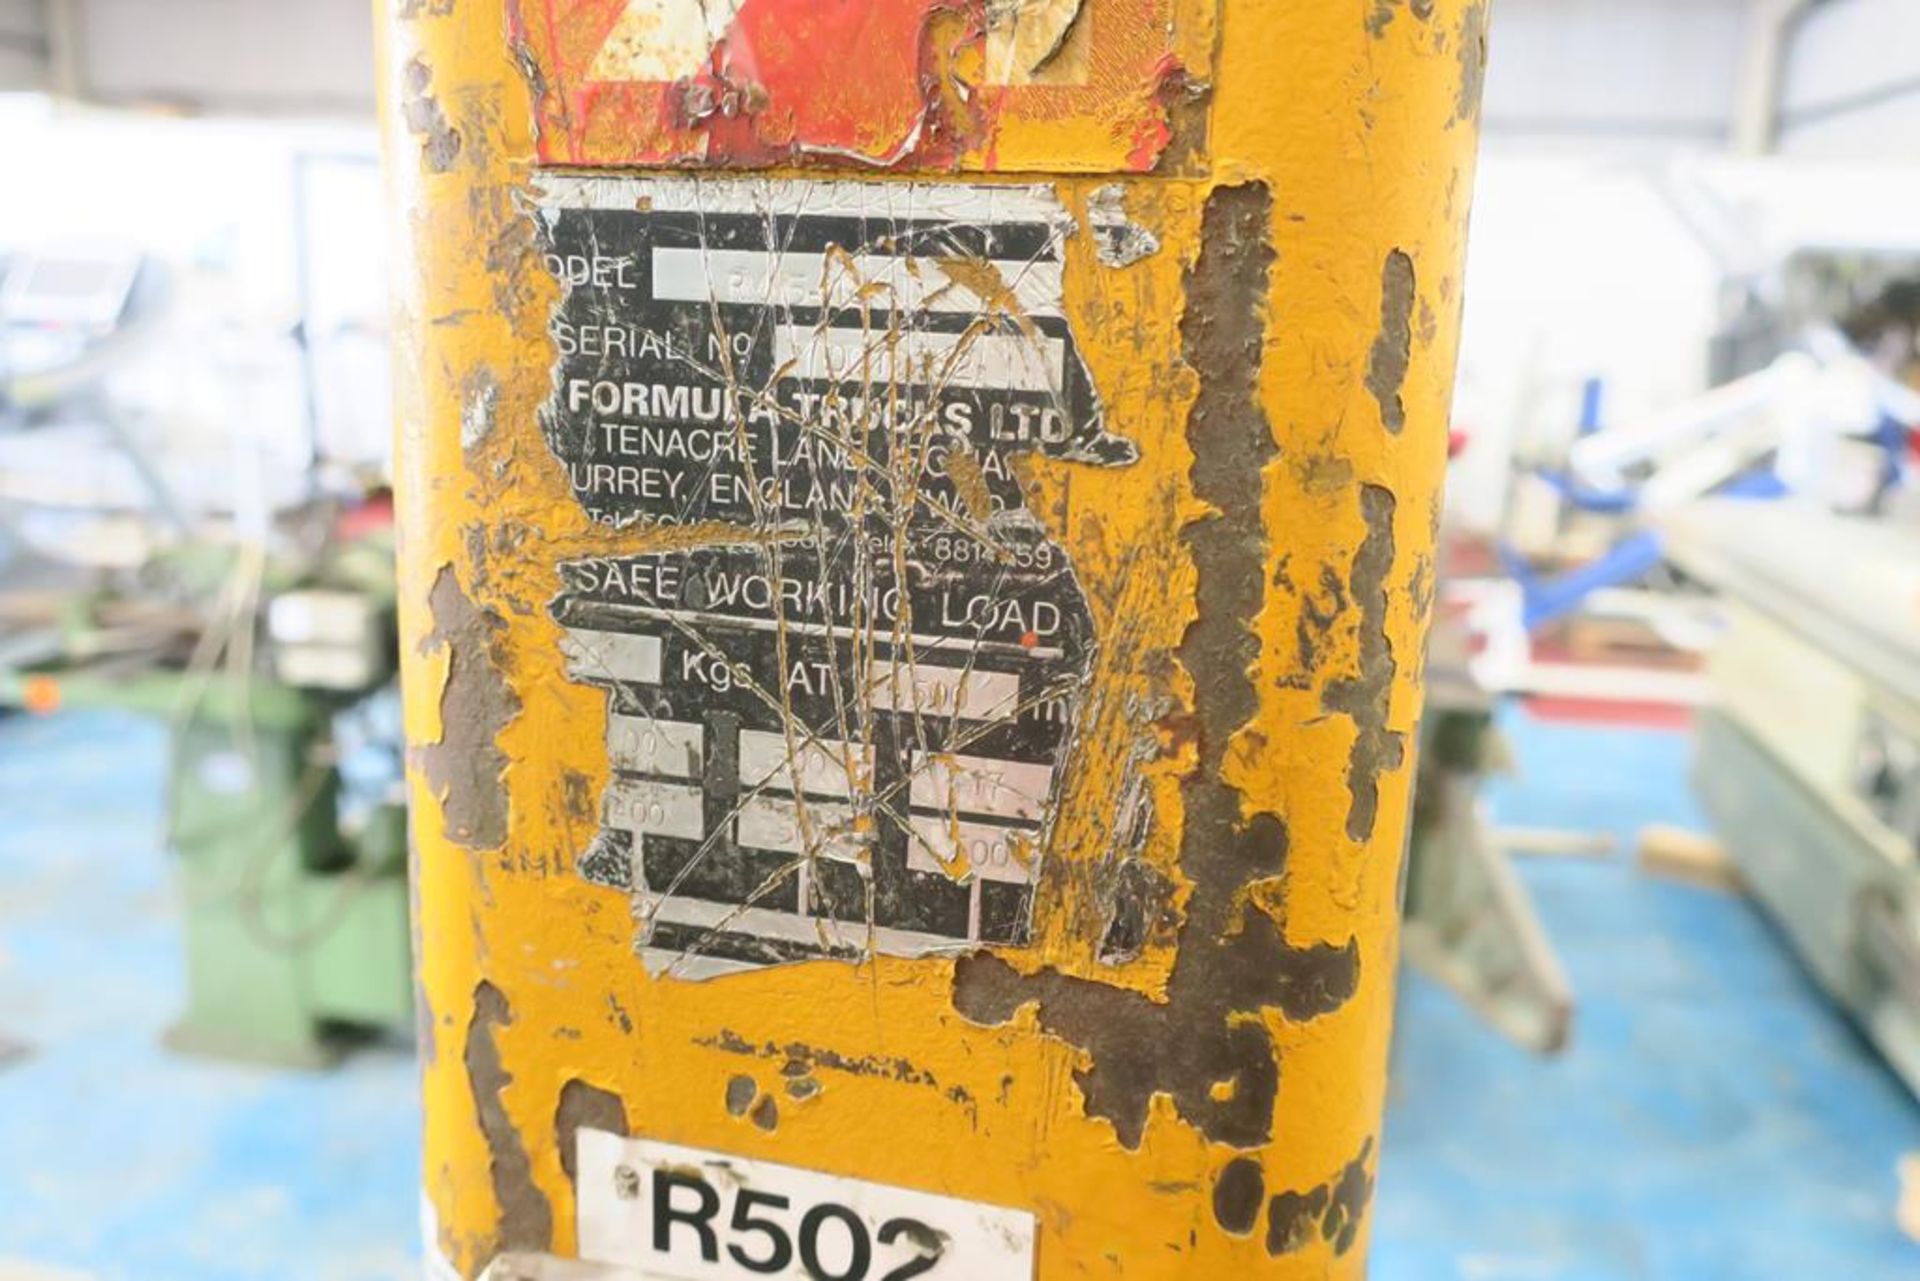 Formular RM5-18 Manual Forklift - Image 5 of 5